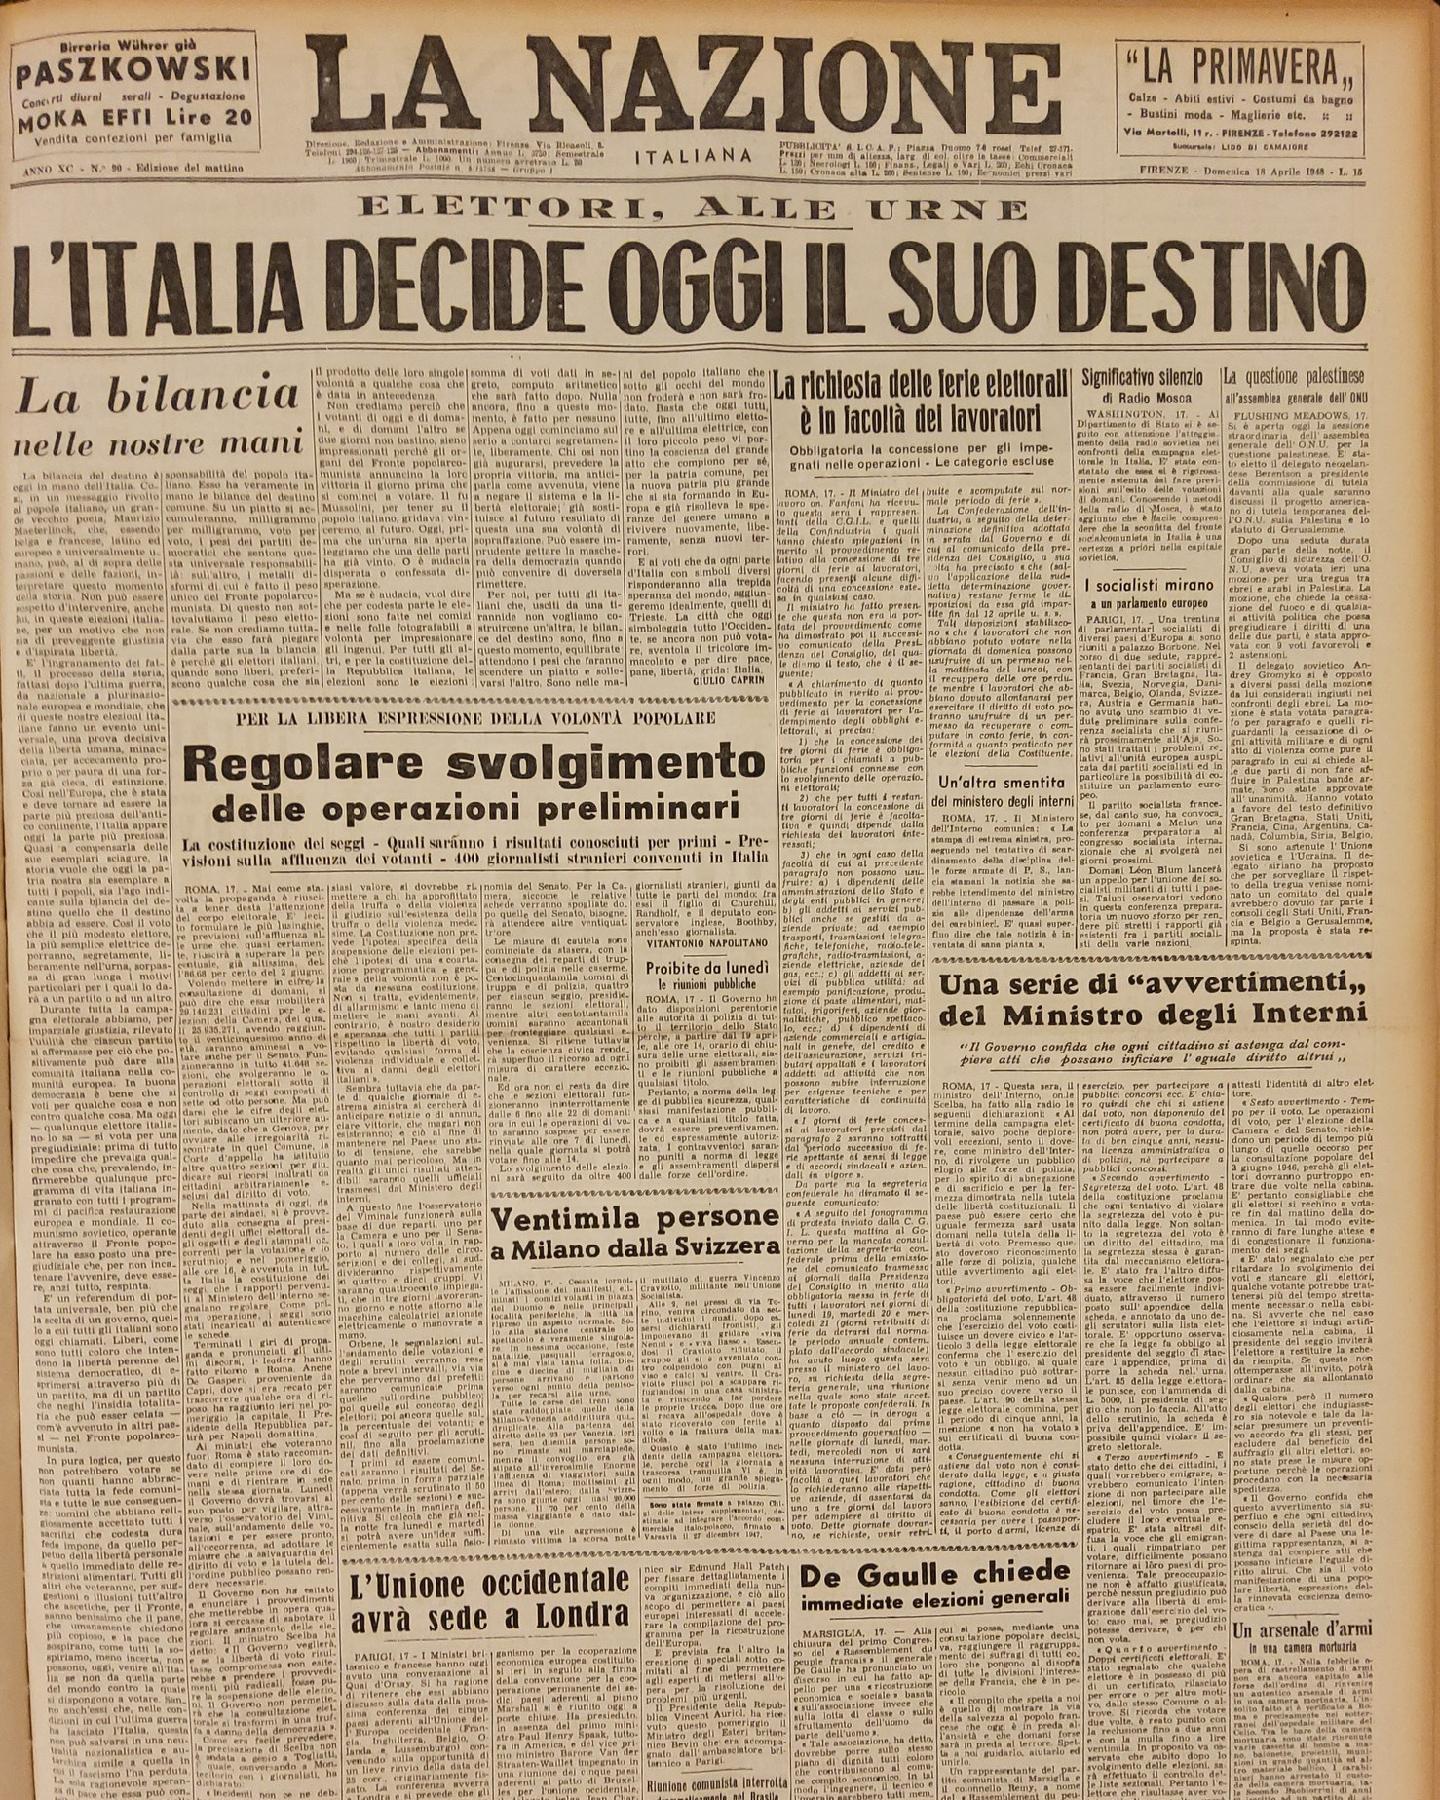 18 aprile 1948 - Prima pagina del quotidiano "La Nazione".